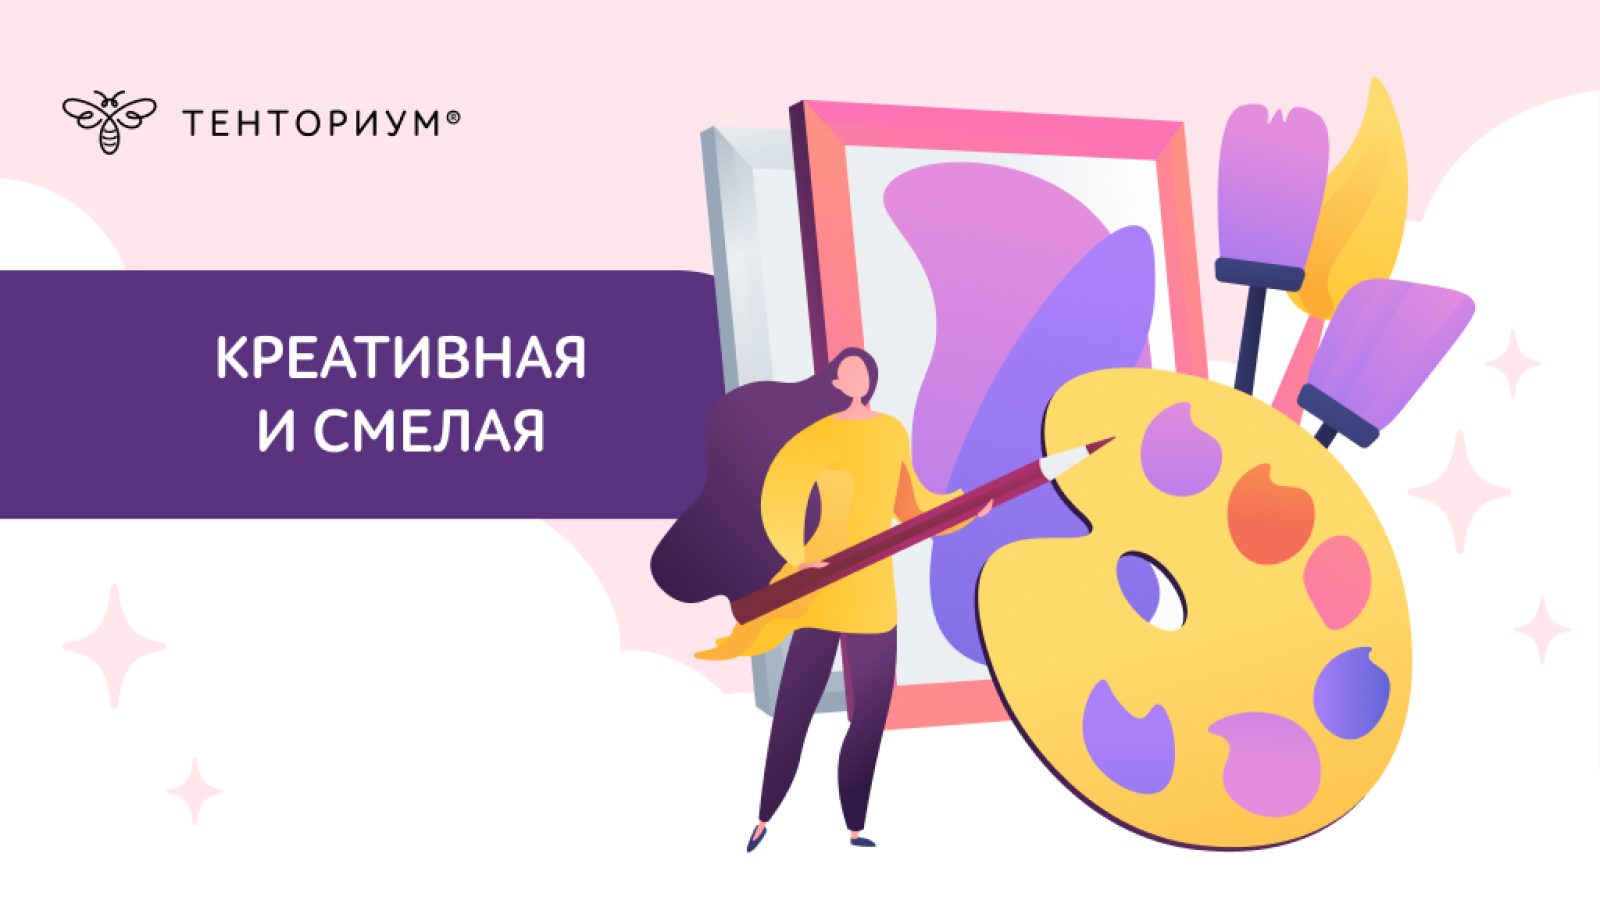 Kreativnaya-i-smelaya-1024_580